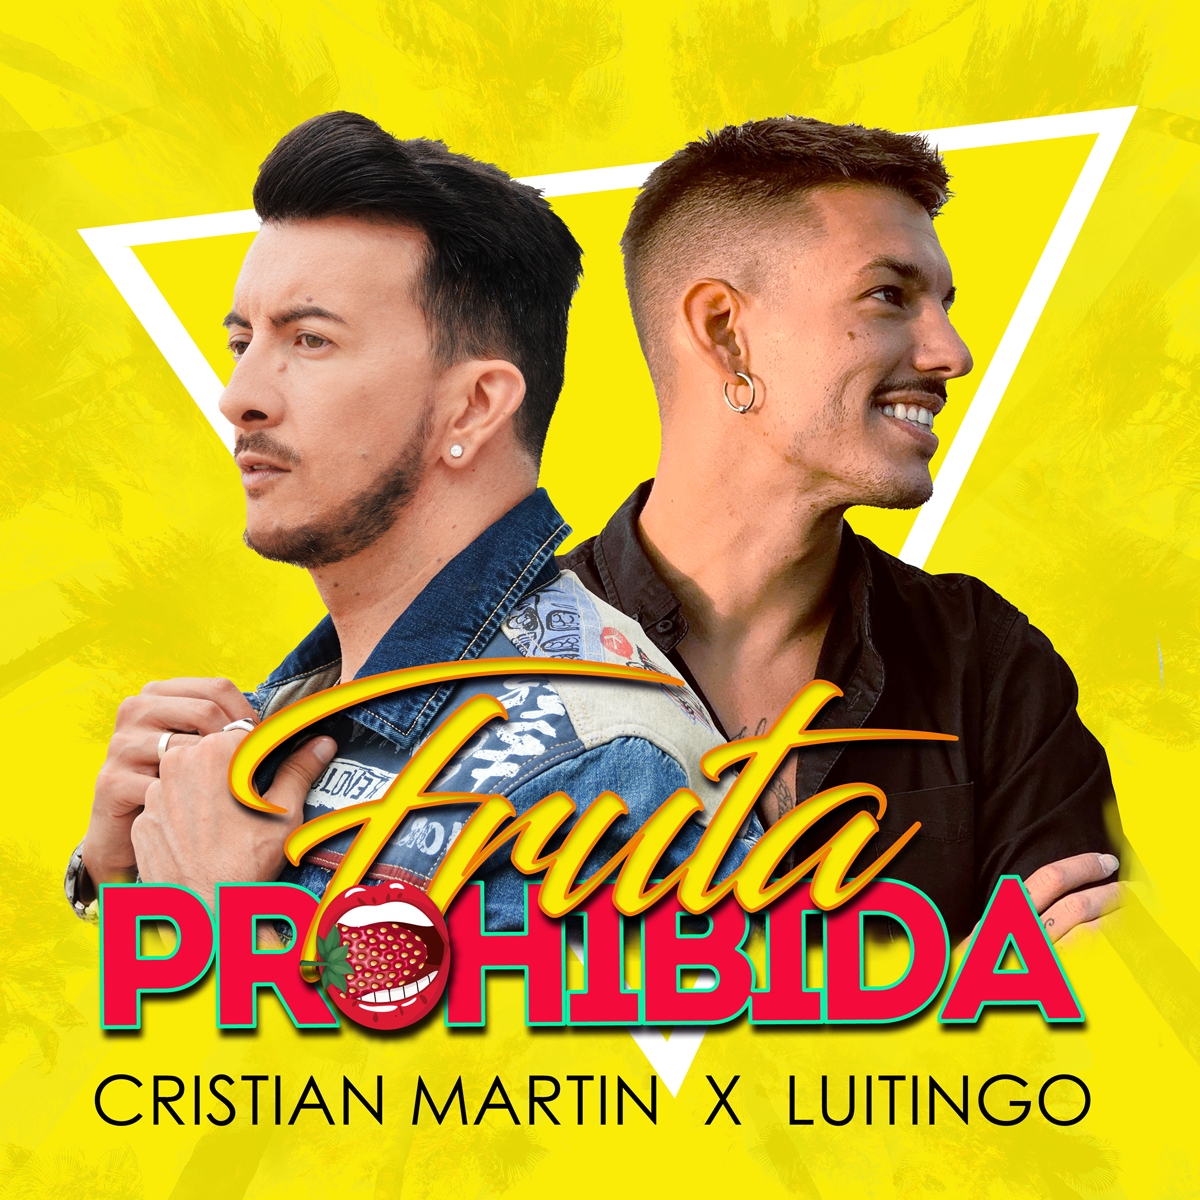 Cristian Martin estrena su nuevo sencillo "Fruta Prohibida" FT. Luitingo